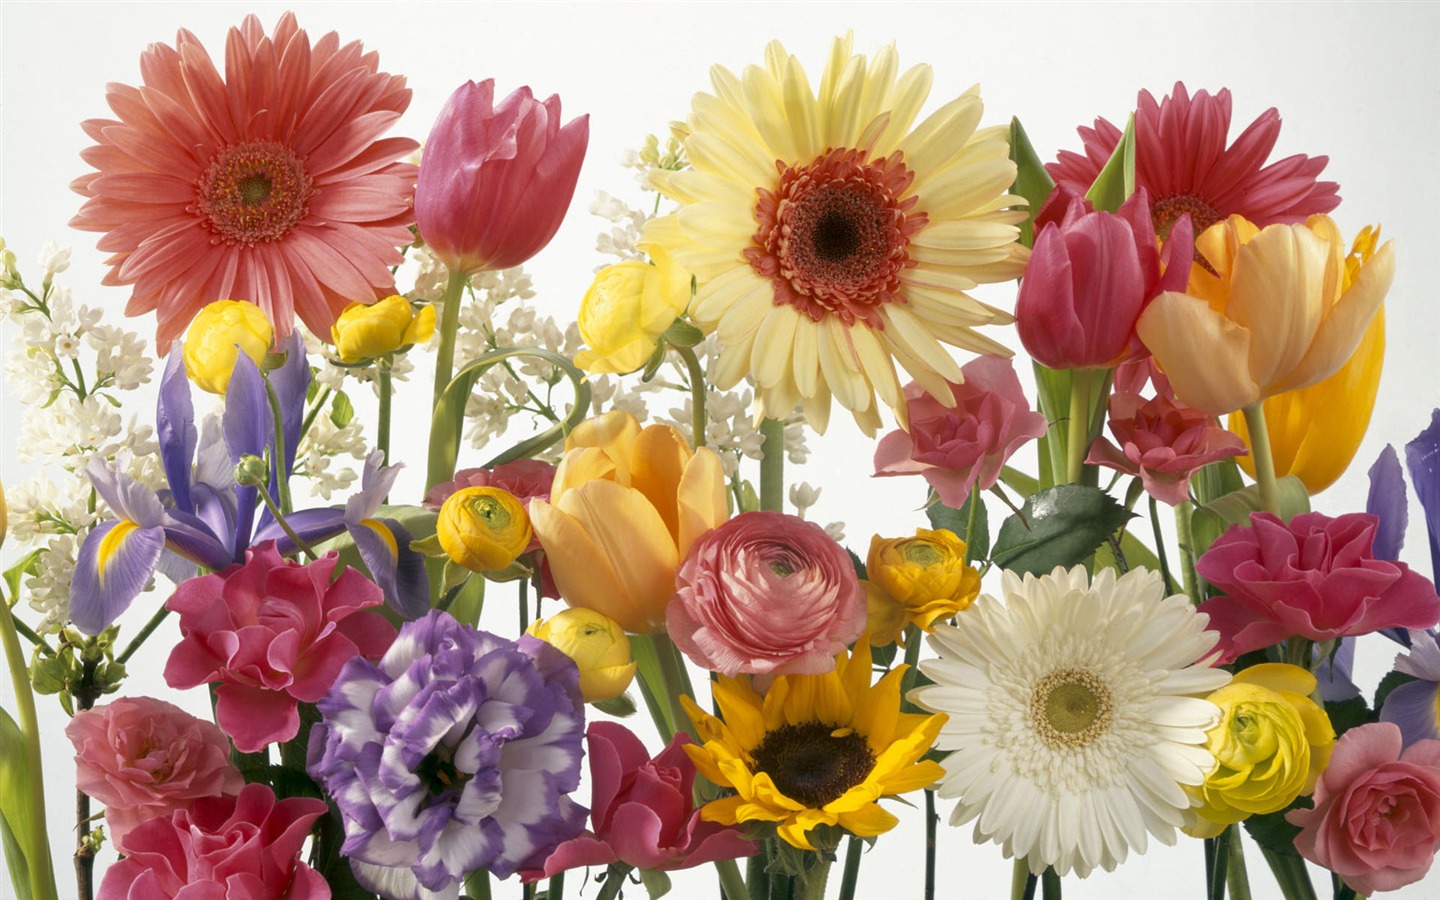 Pantalla ancha de flores fondos de escritorio de close-up #25 - 1440x900